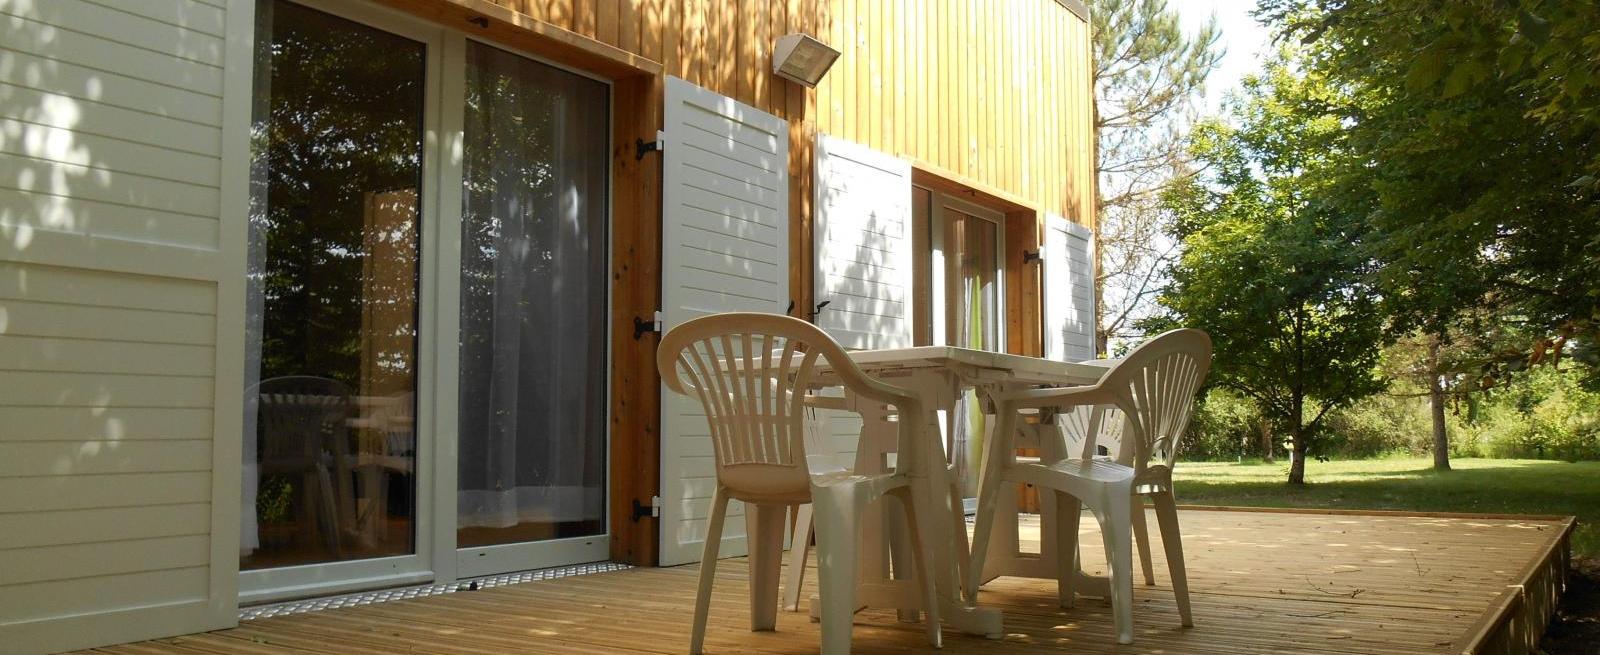 Terrasse privé des cottages du camping de Bellebouche